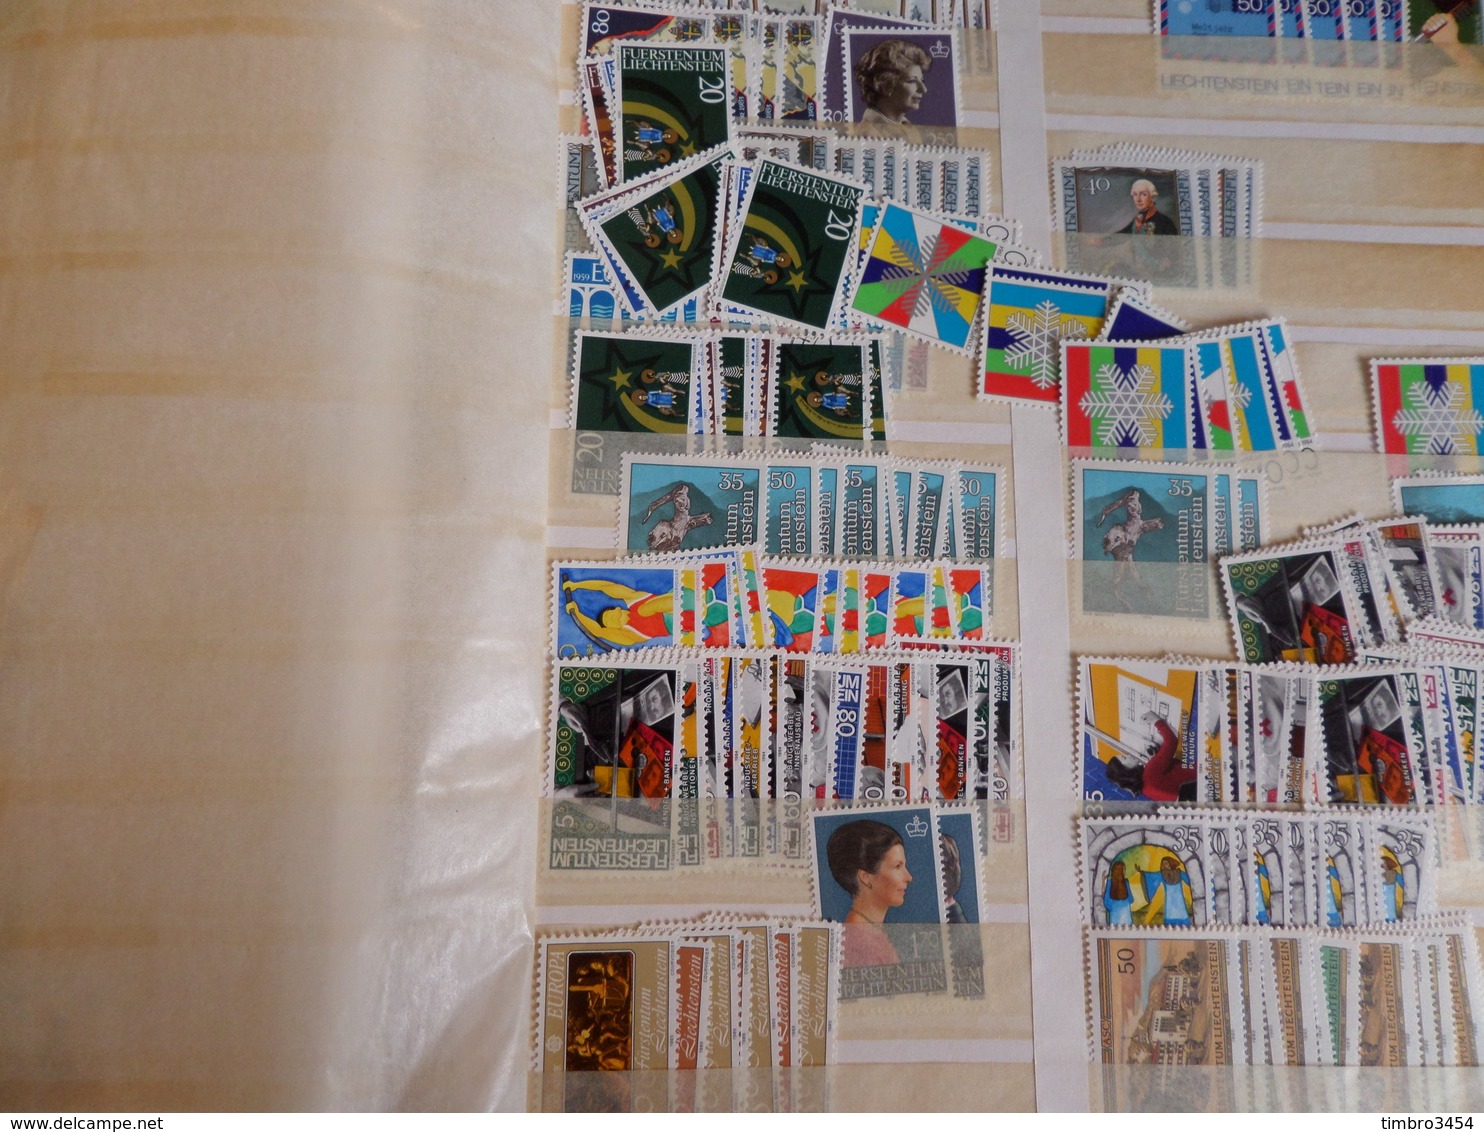 Vrac de milliers de timbres tous pays. TB.  Collections, bonnes valeurs, nombreux neufs ** MNH . Cote énorme!! A saisir!